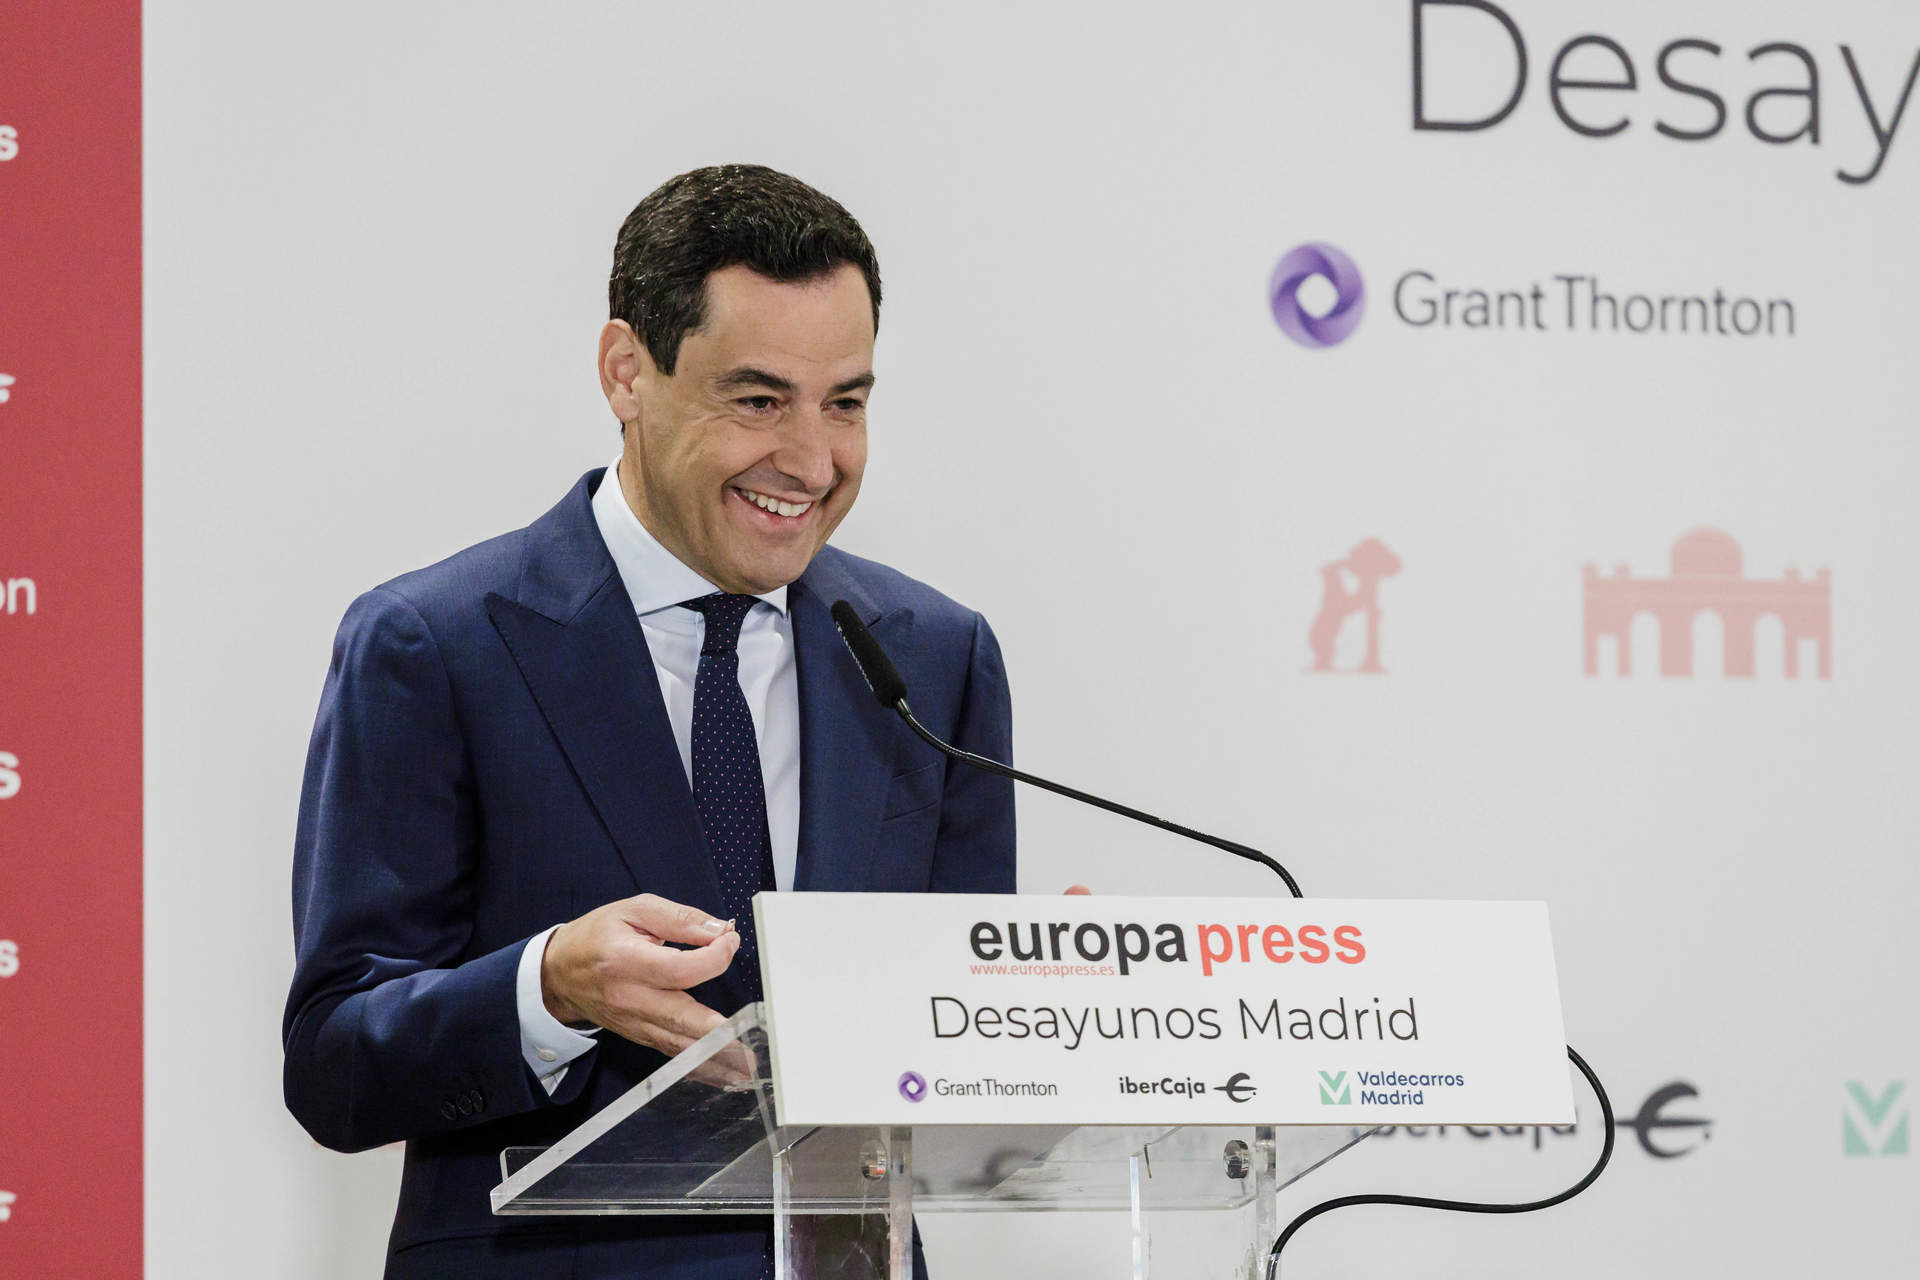 El presidente de la Junta de Andalucía, Juanma Moreno, interviene durante un desayuno Madrid de Europa Press, a 10 de mayo de 2023, en Madrid.